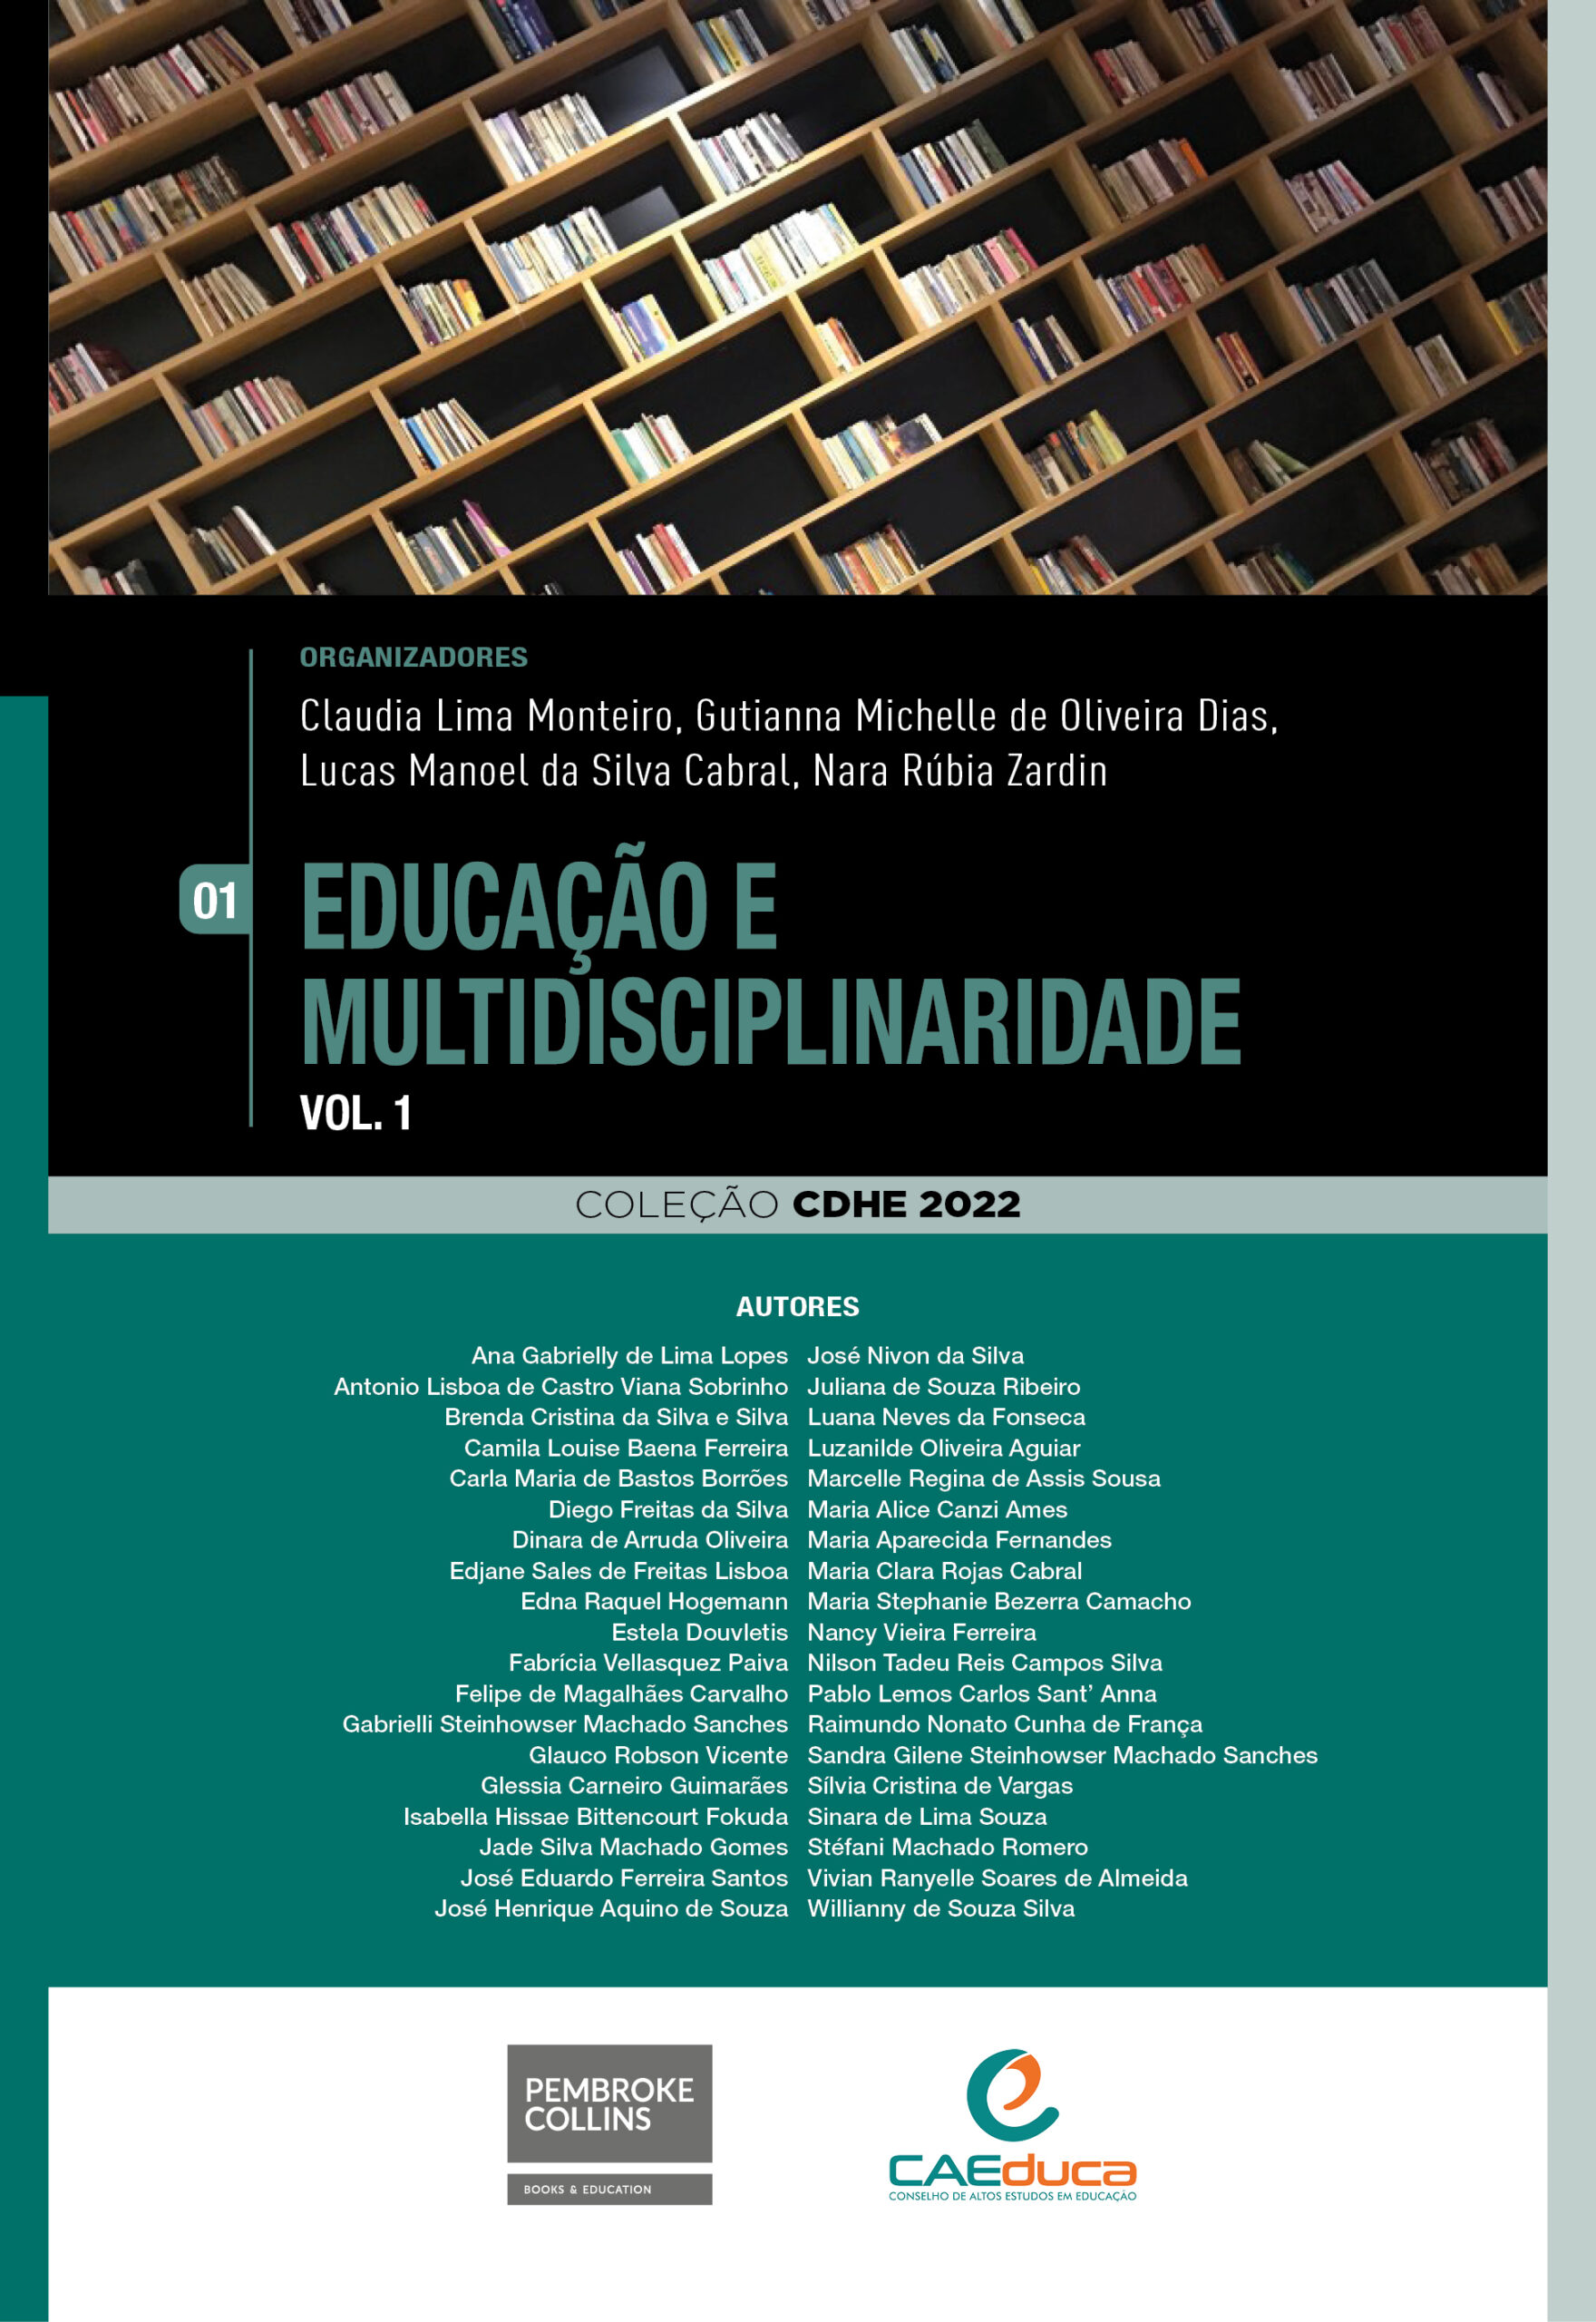 01-capa-CDHE2022-Educacao-e-multidisciplinariedade-vol1